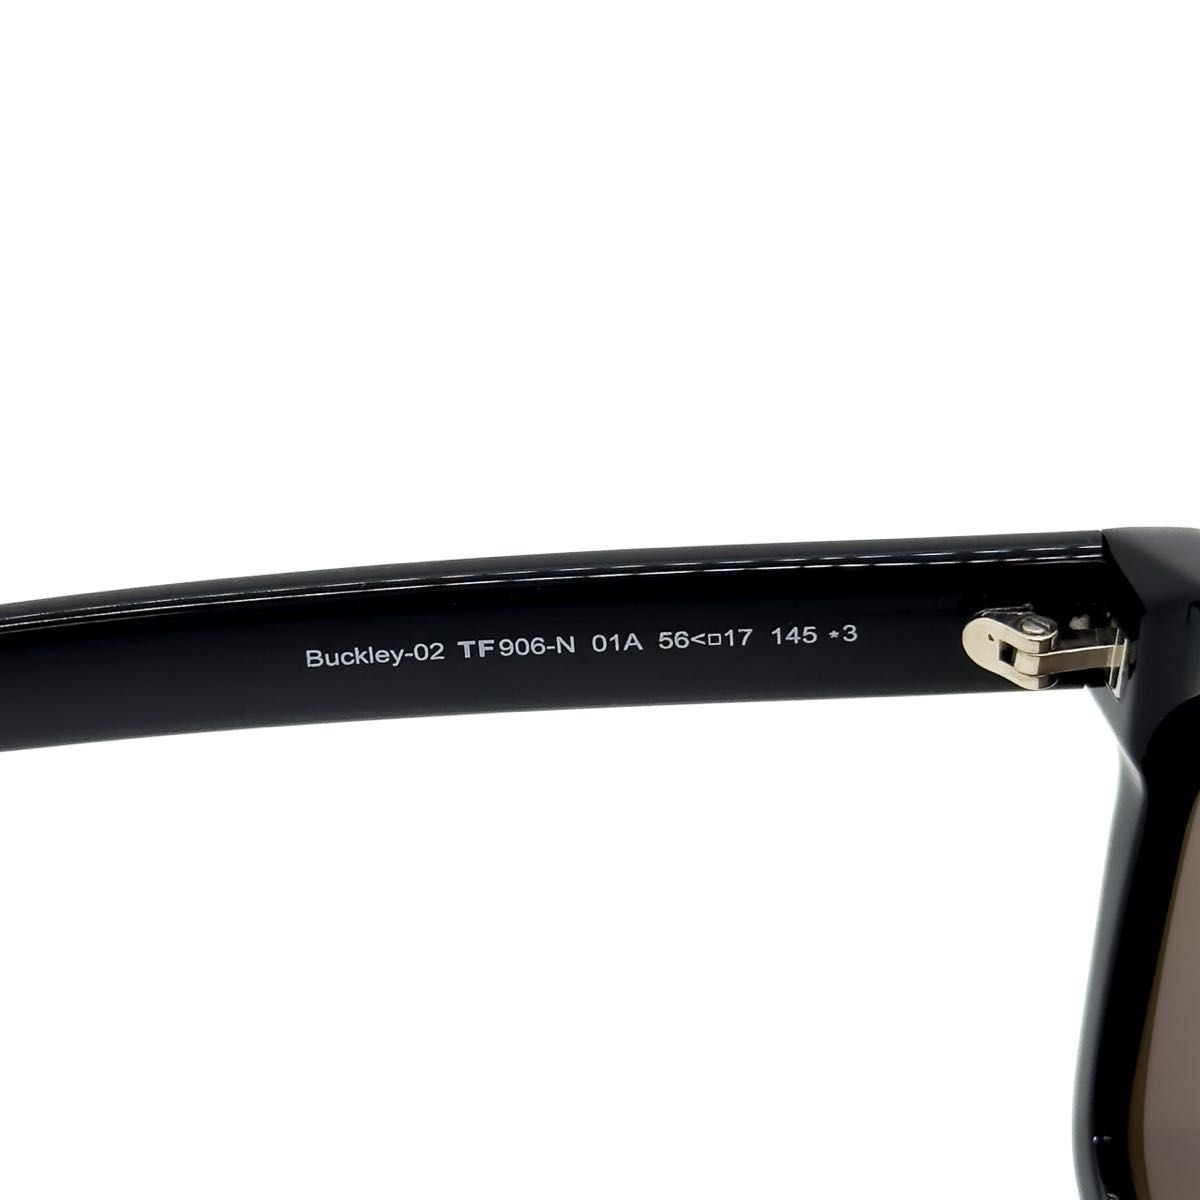 【新品/匿名配送】TOM FORD トムフォード サングラス TF906 ブラック シルバー UV100%カットレンズ イタリア製